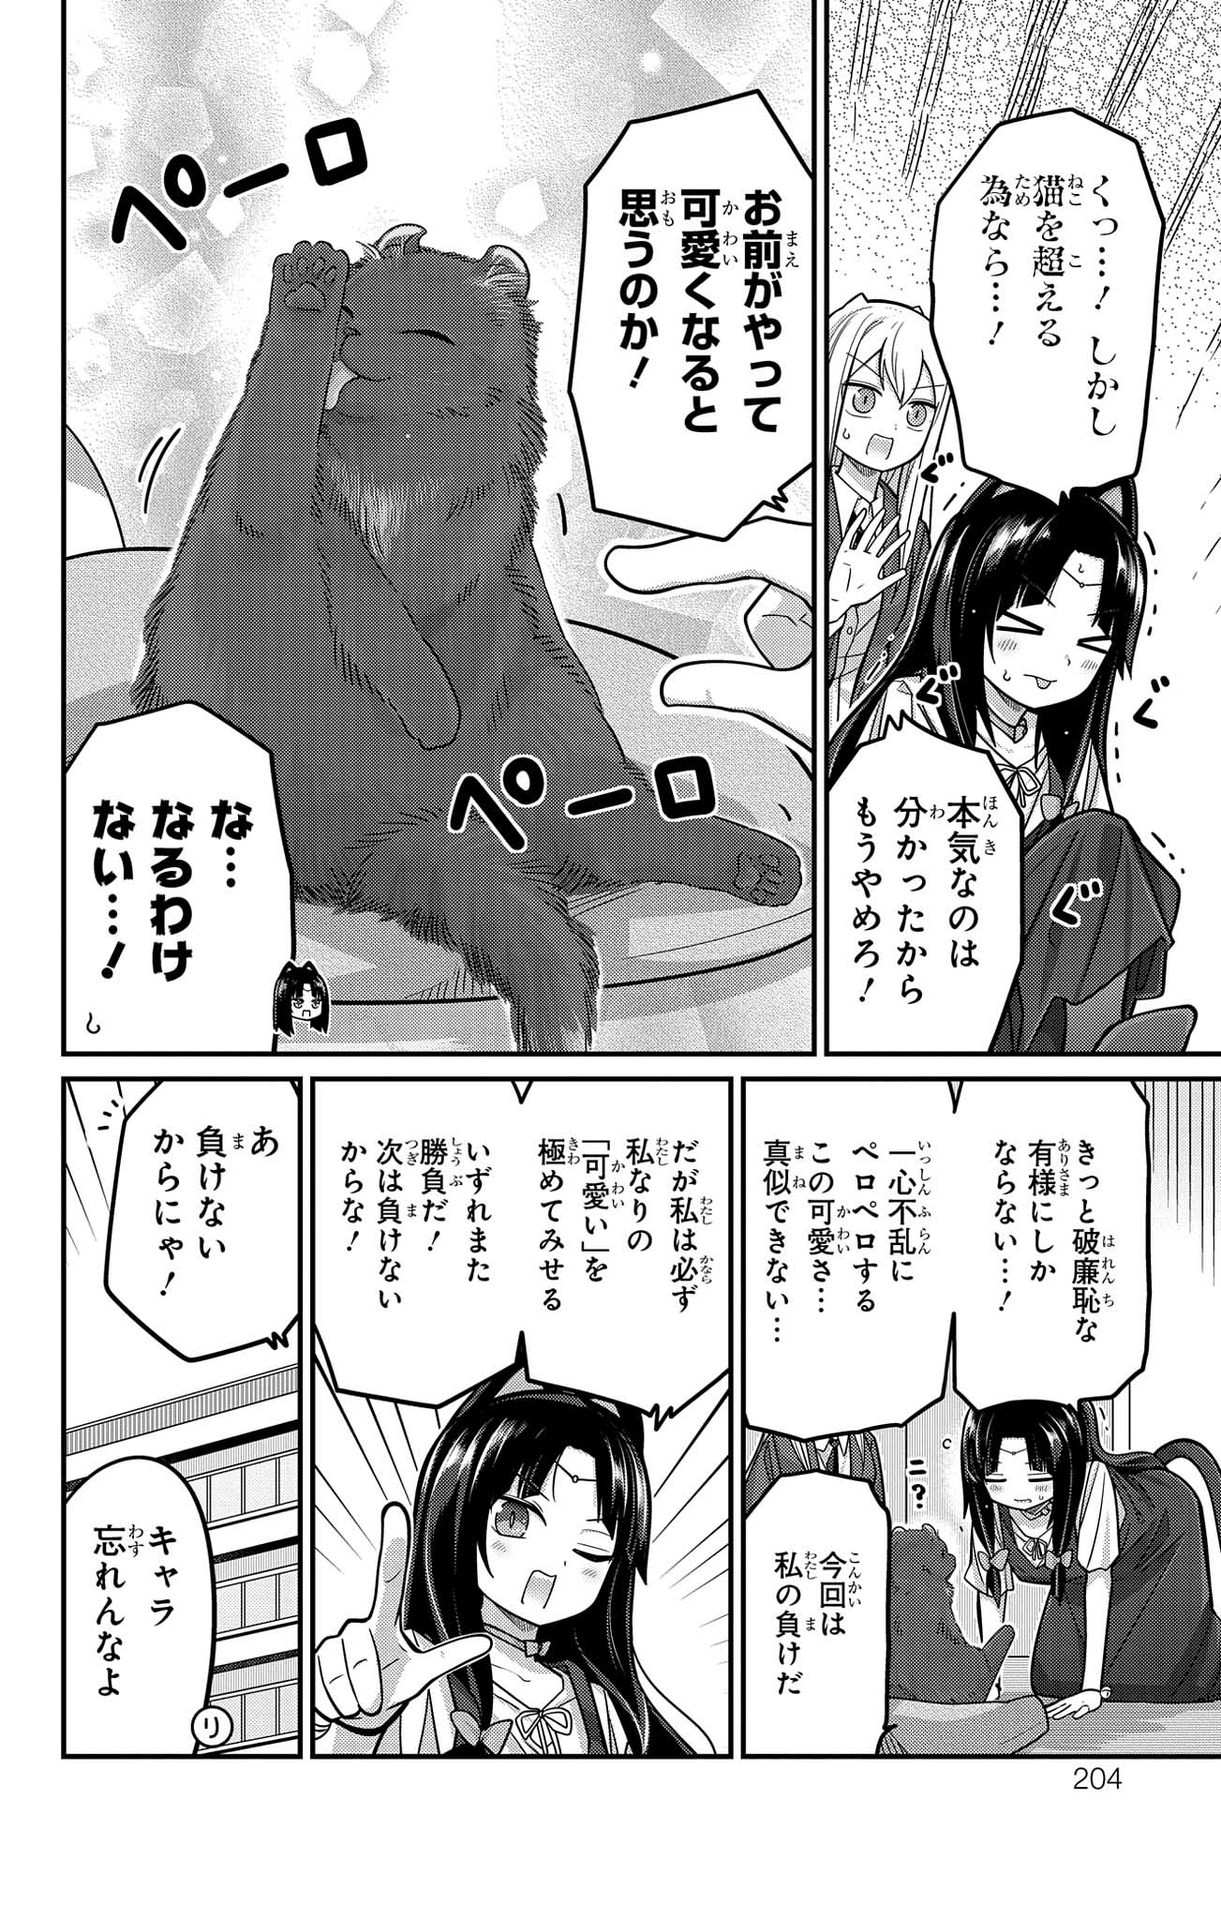 Kawaisugi Crisis - Chapter 96 - Page 14